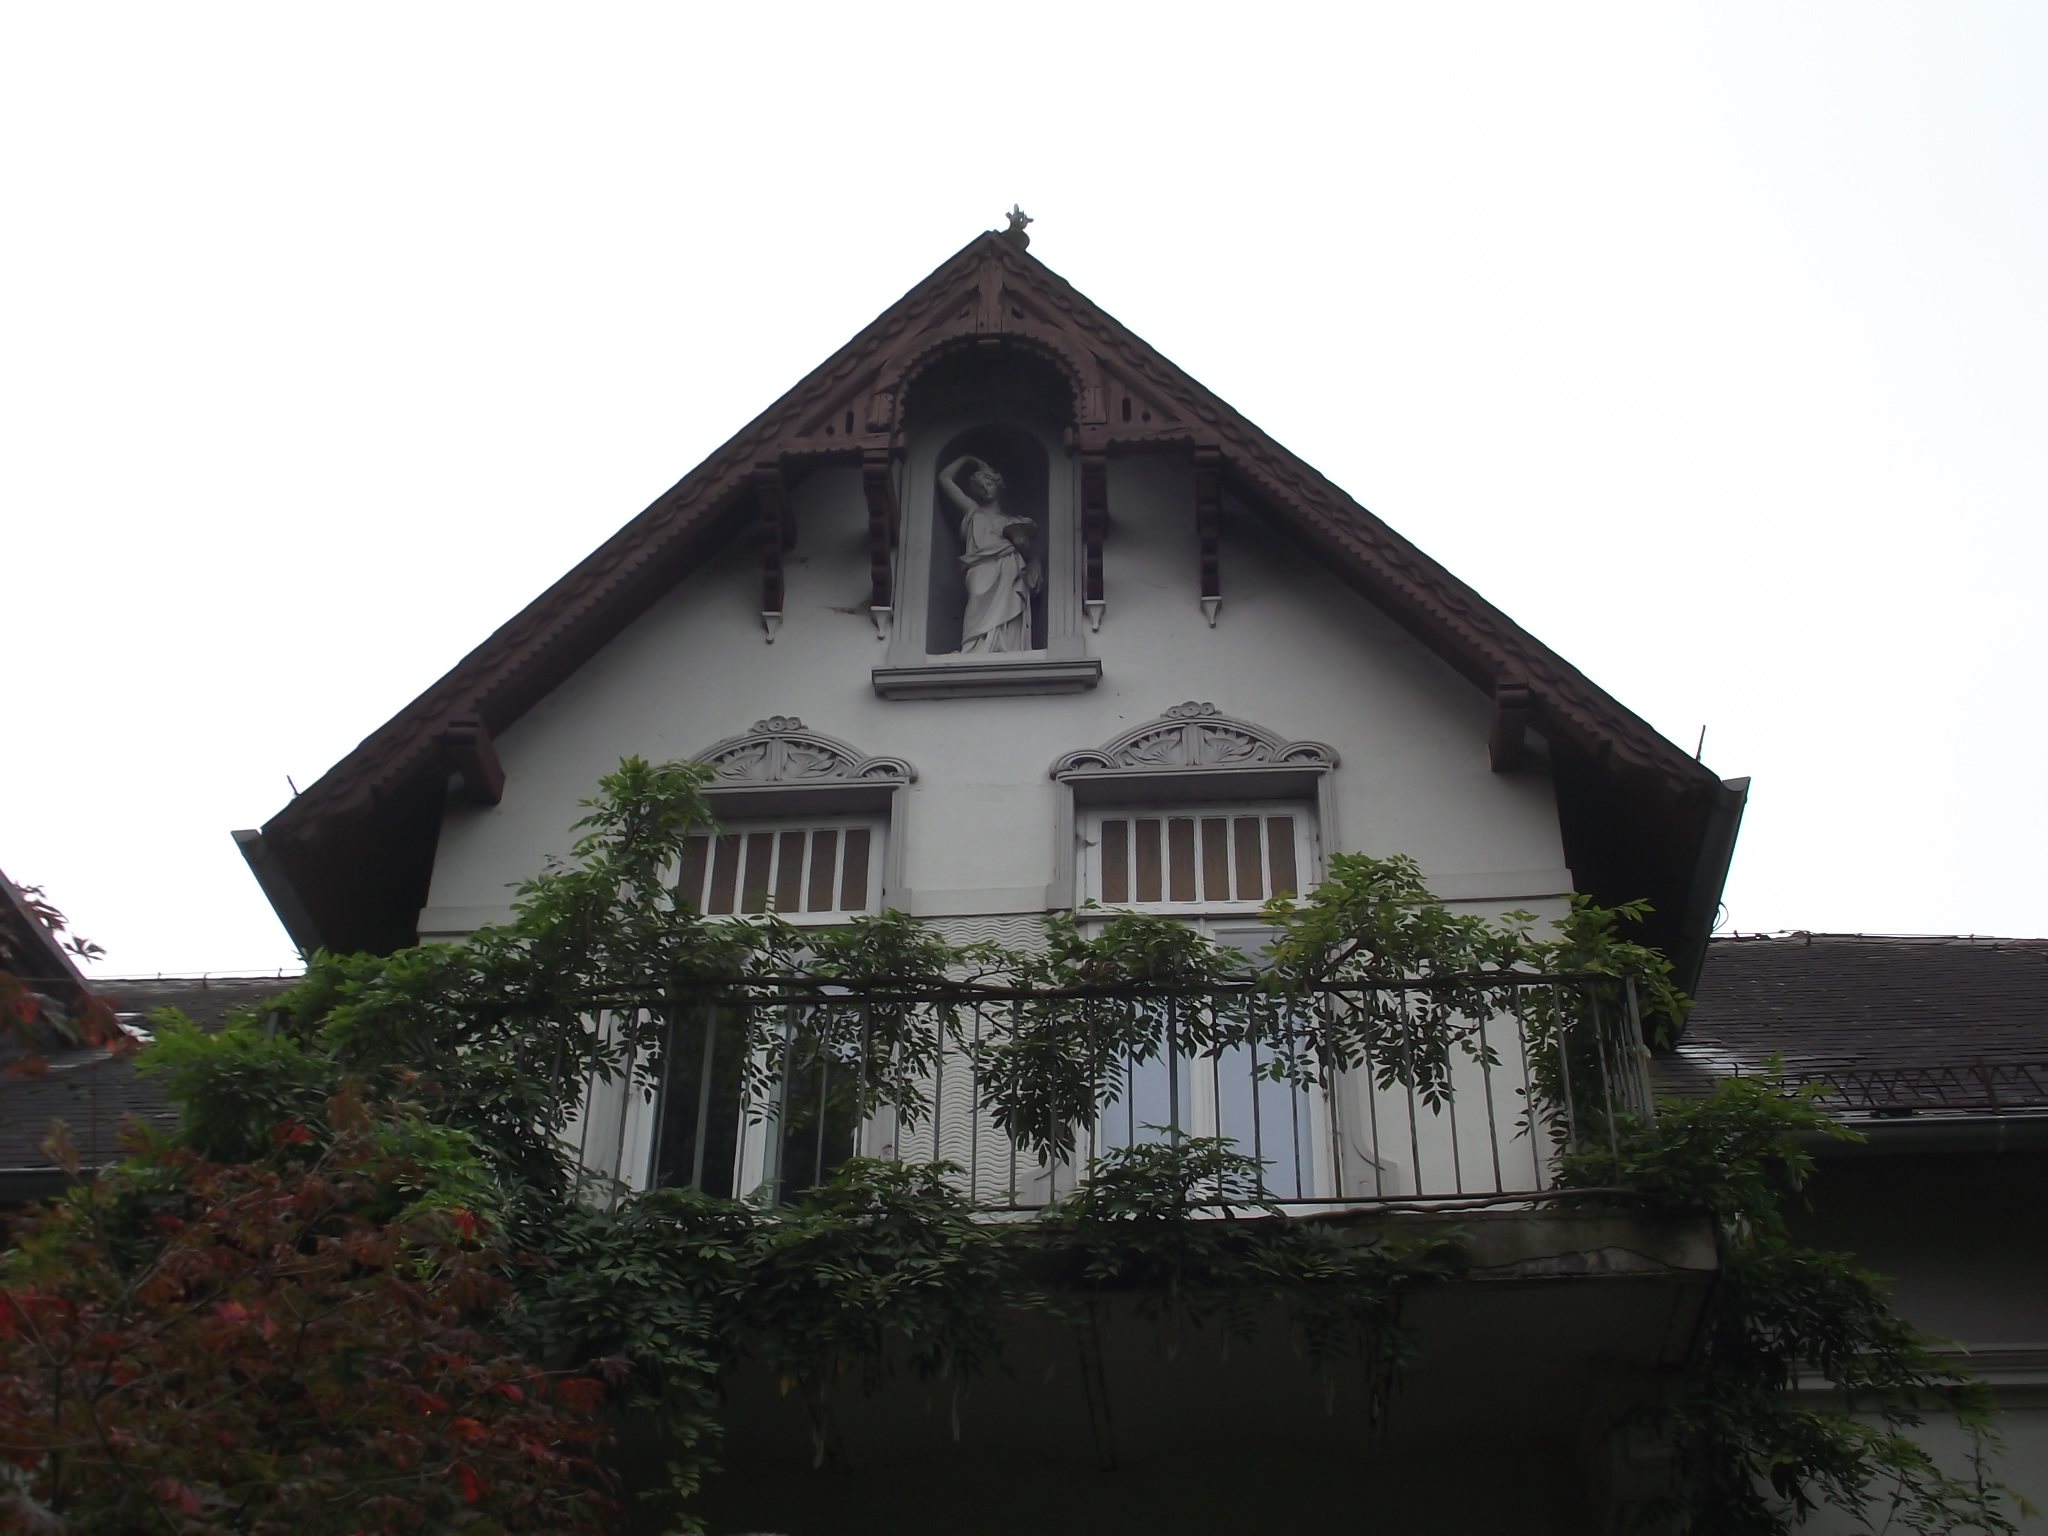 Location Nr 9 Das &quot;ARBORETUM in Neuenkoop/Berne&quot; - wunderschönes altes Gebäude